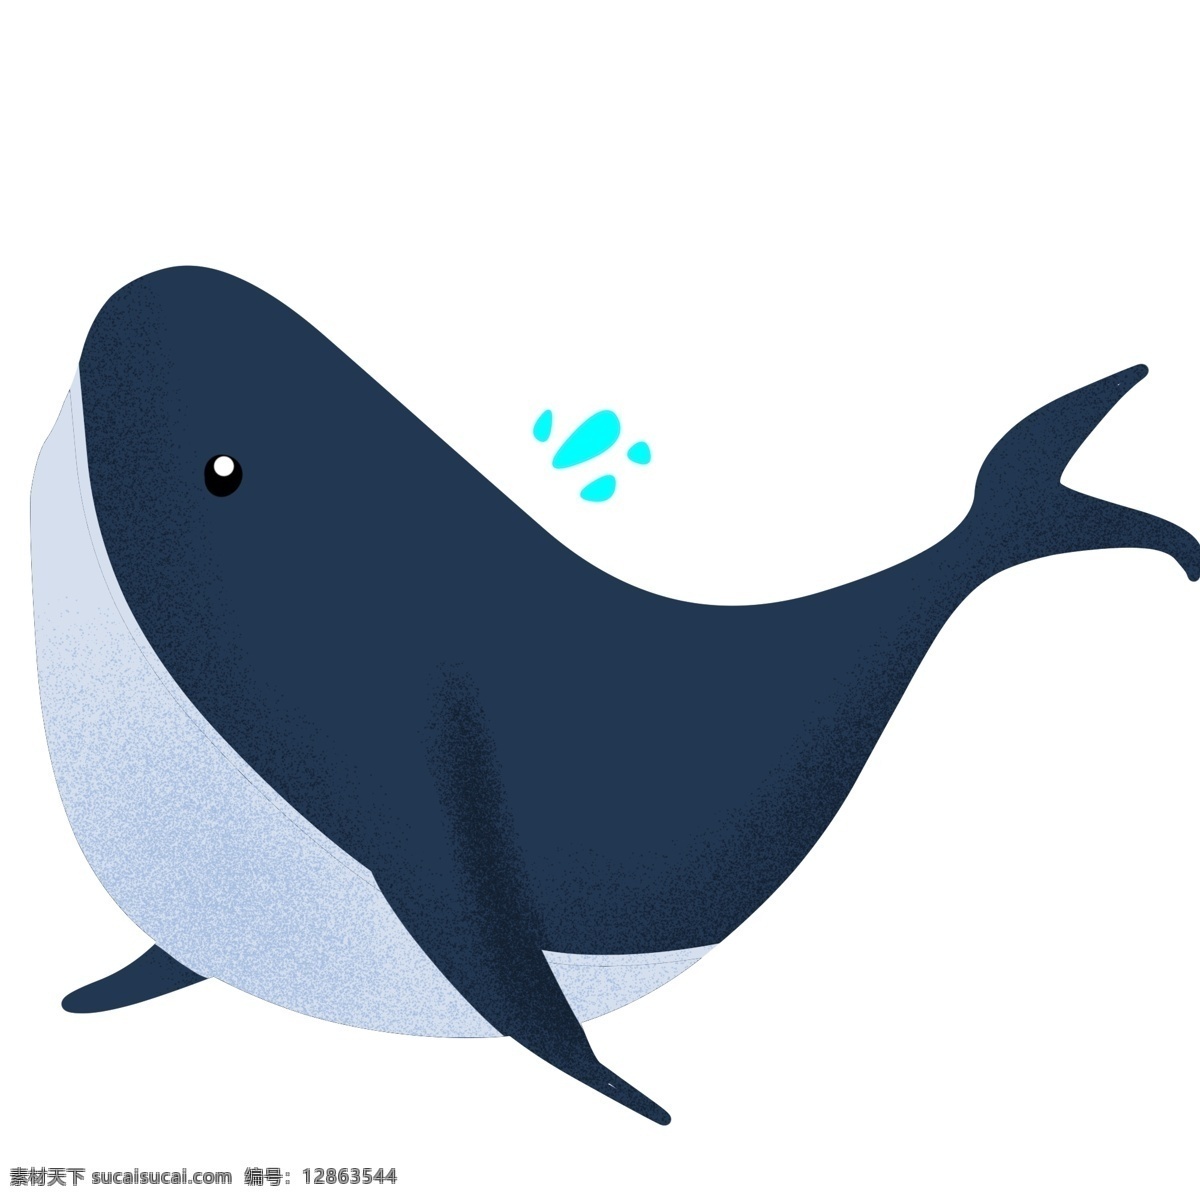 手绘 扭头 鲸鱼 插画 卡通插画 手绘鲸鱼插画 深海的鲸鱼 扭头的鲸鱼 拟人的鲸鱼 大大的鲸鱼